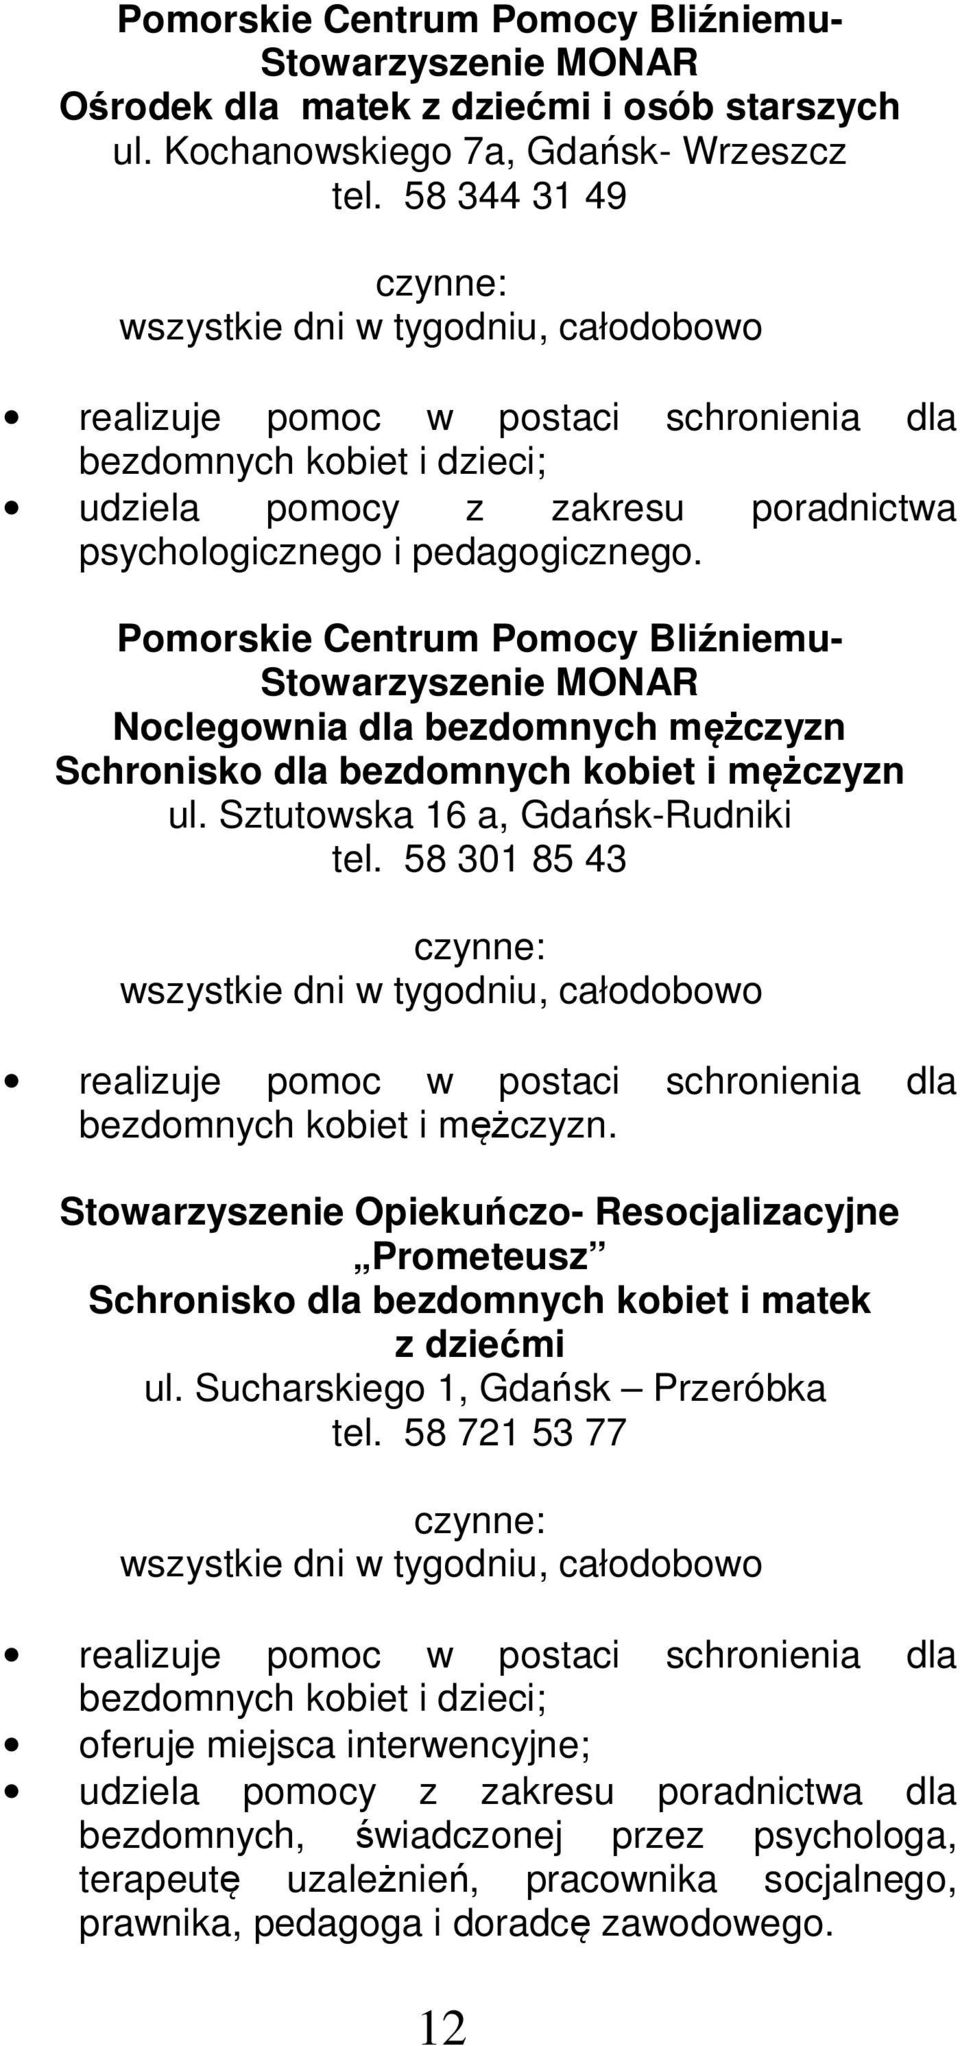 Pomorskie Centrum Pomocy Bliźniemu- Stowarzyszenie MONAR Noclegownia dla bezdomnych mężczyzn Schronisko dla bezdomnych kobiet i mężczyzn ul. Sztutowska 16 a, Gdańsk-Rudniki tel.